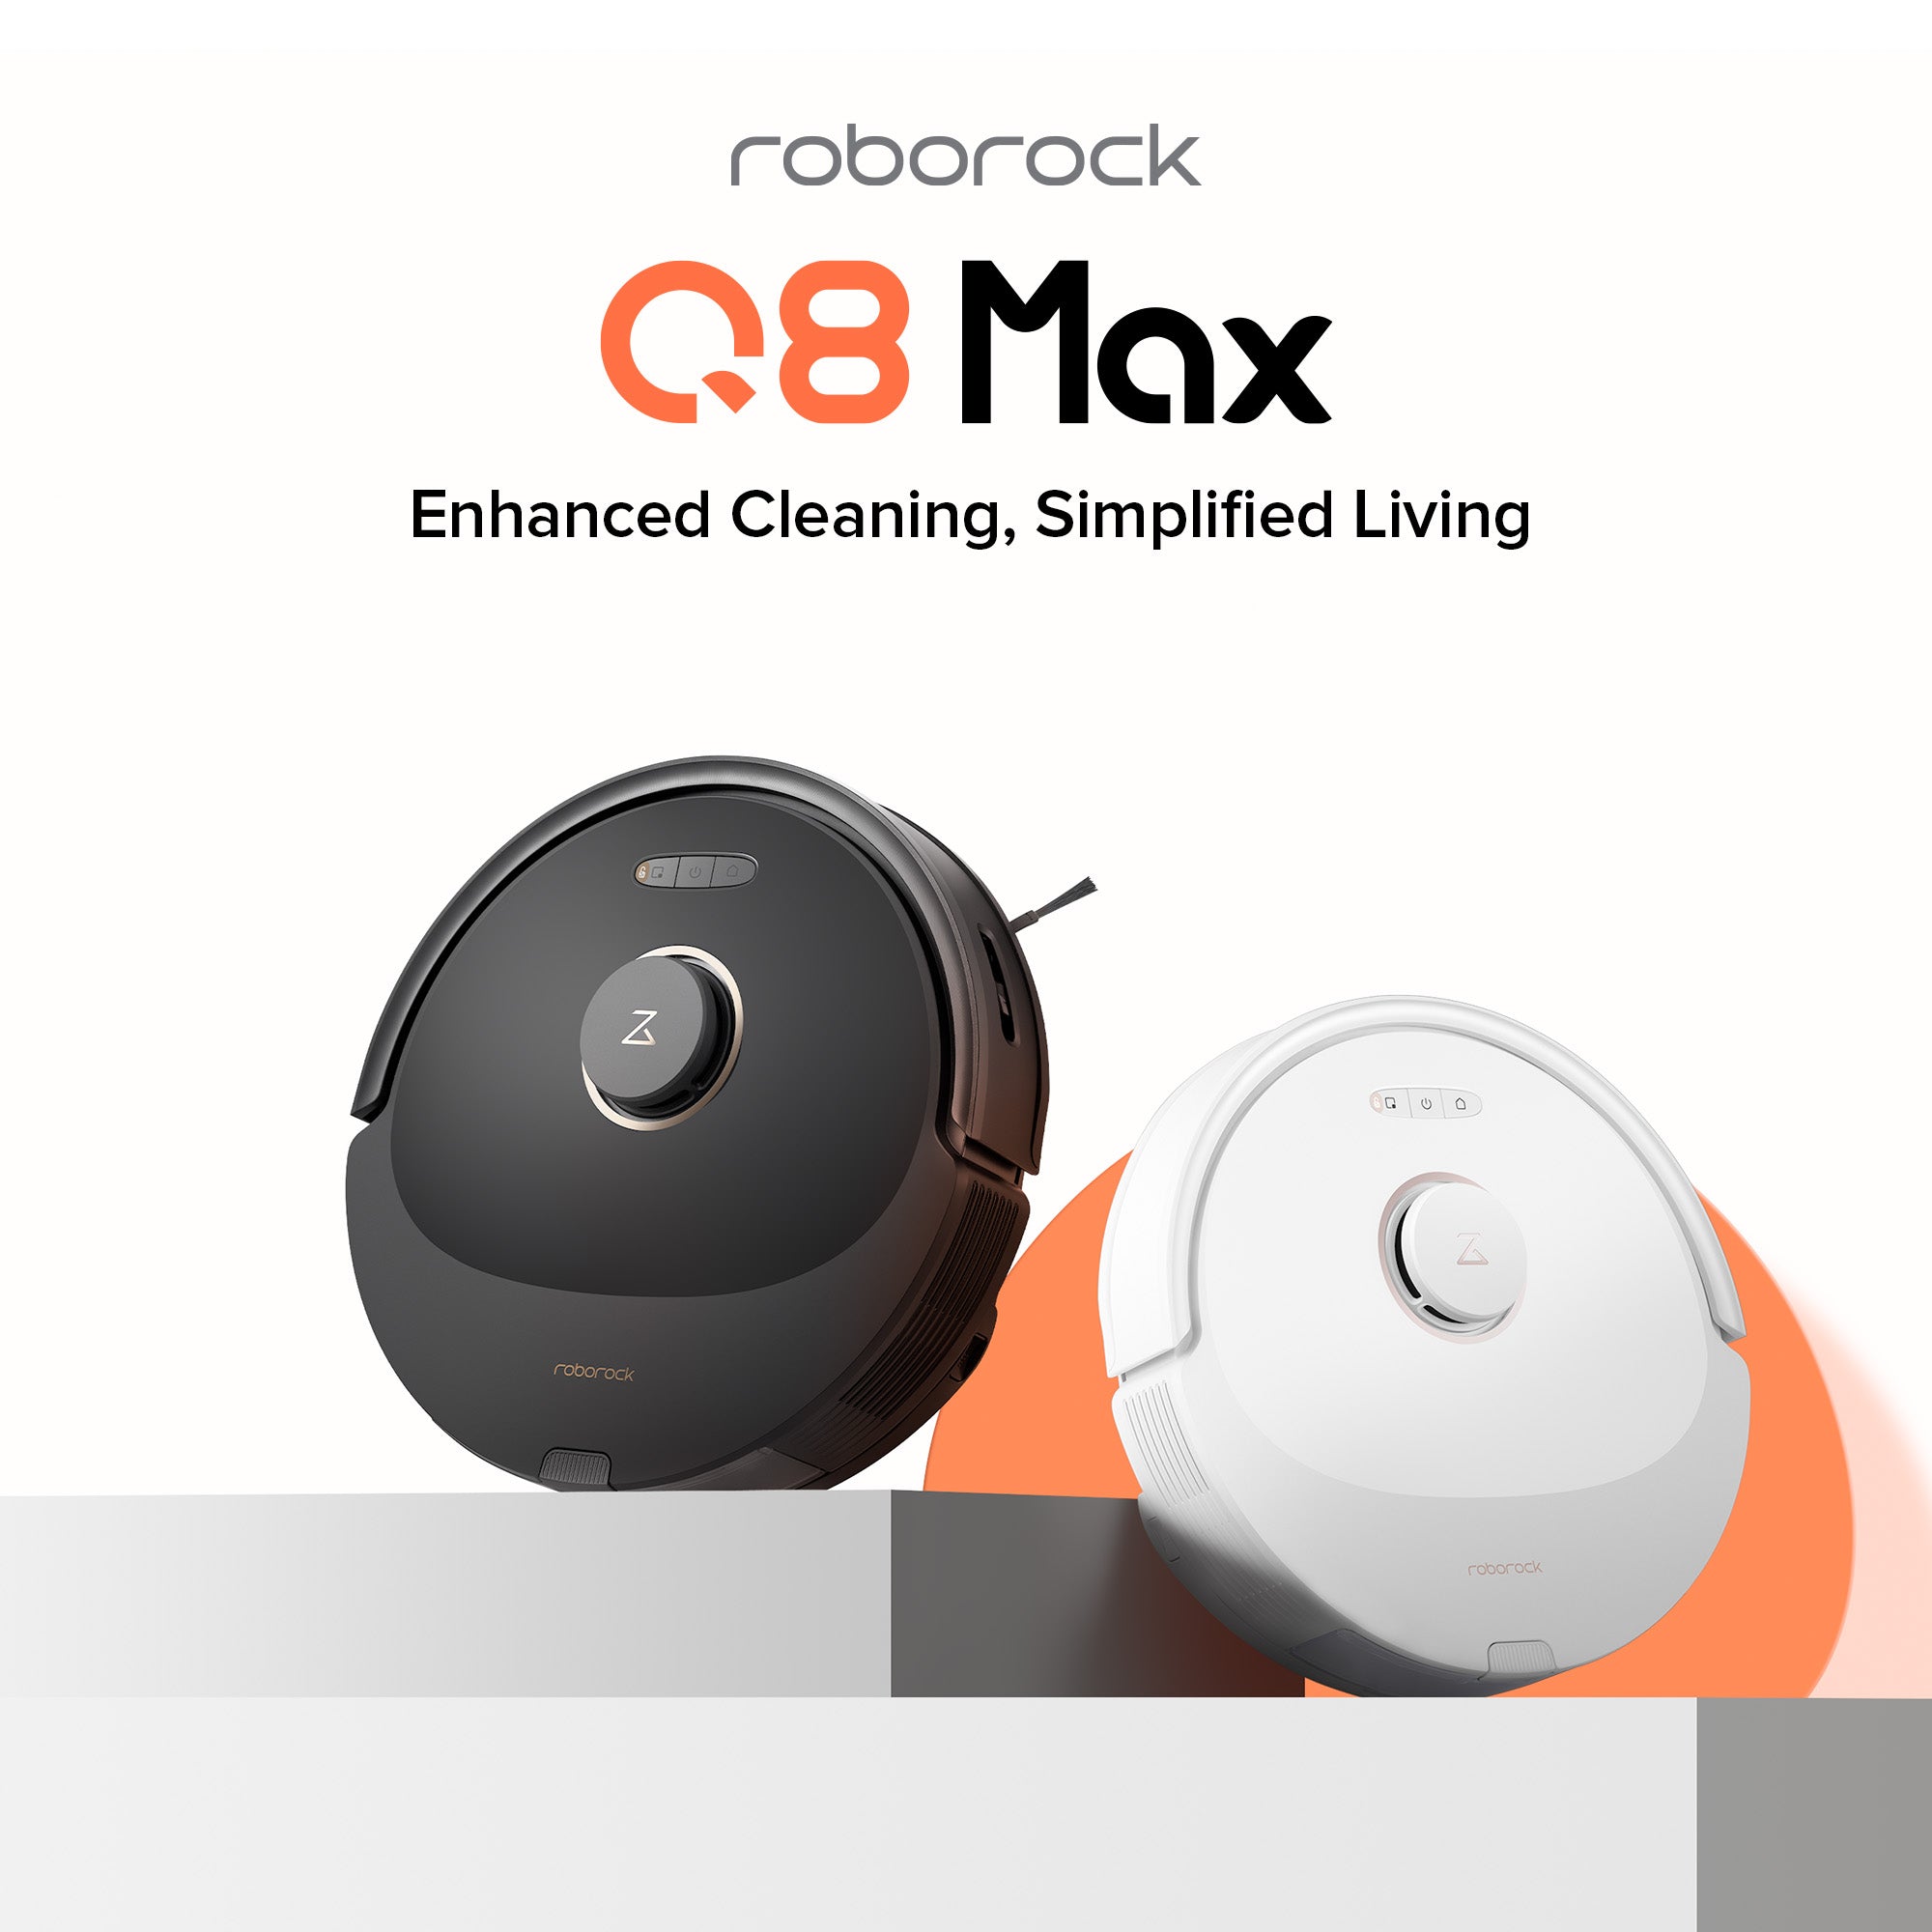 Alquila Roborock Q8 Max Vacuum & Mop Robot Cleaner desde 24,90